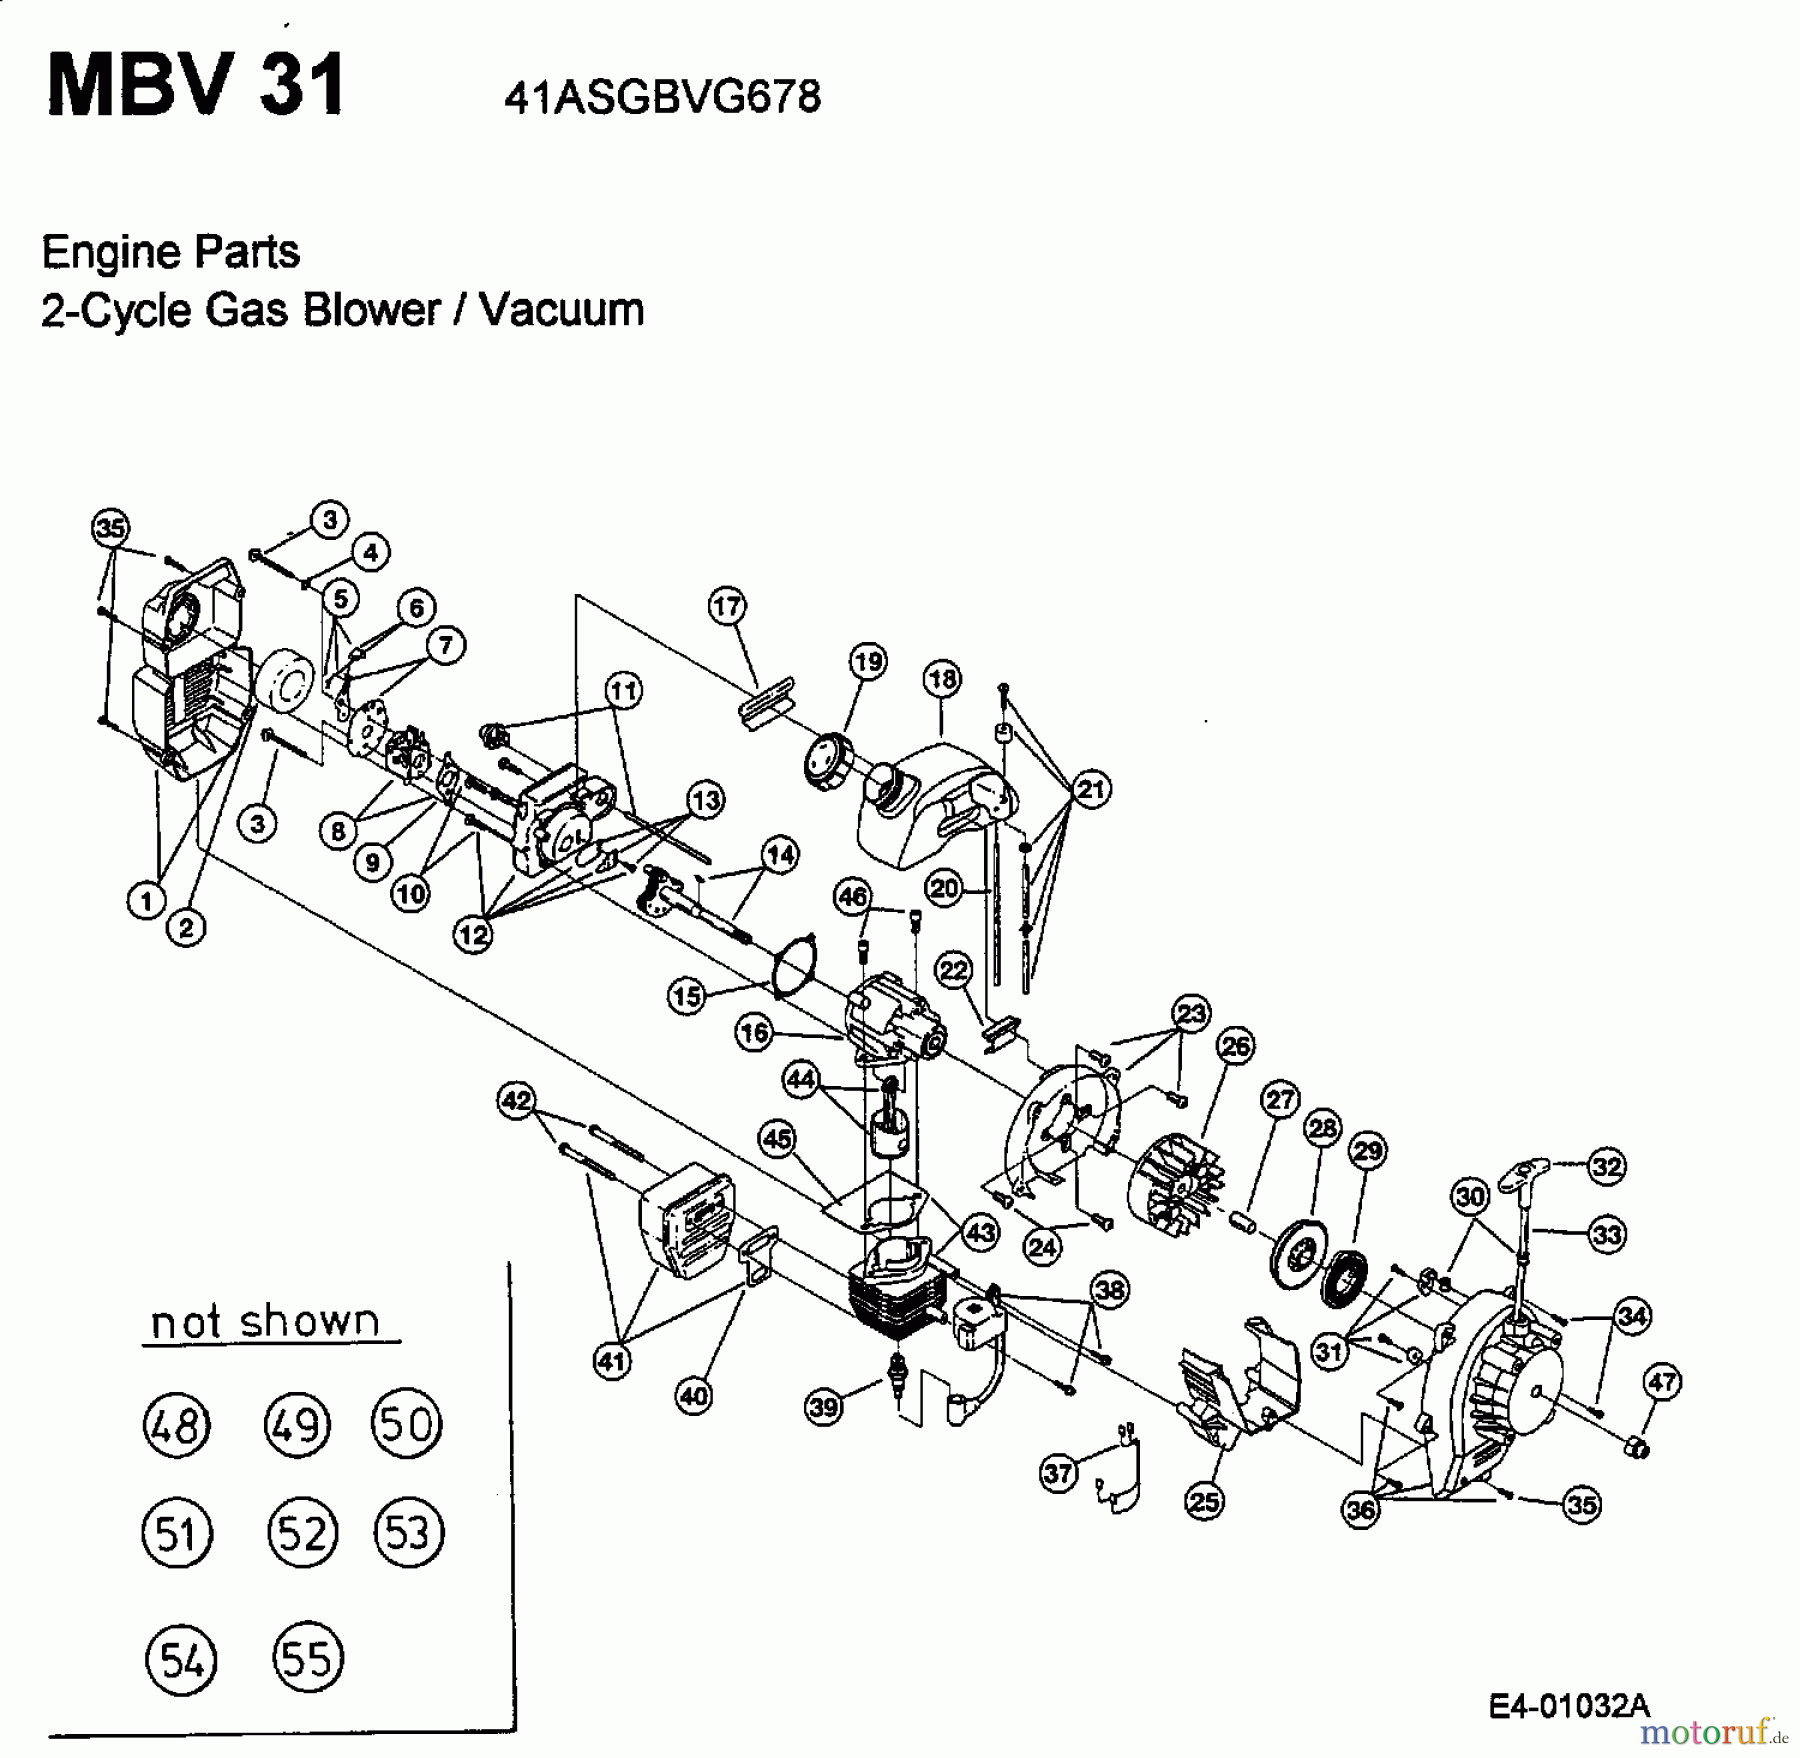  MTD Souffleur de feuille, Aspirateur de feuille MBV 31 41ASGBVG678  (2002) Moteur